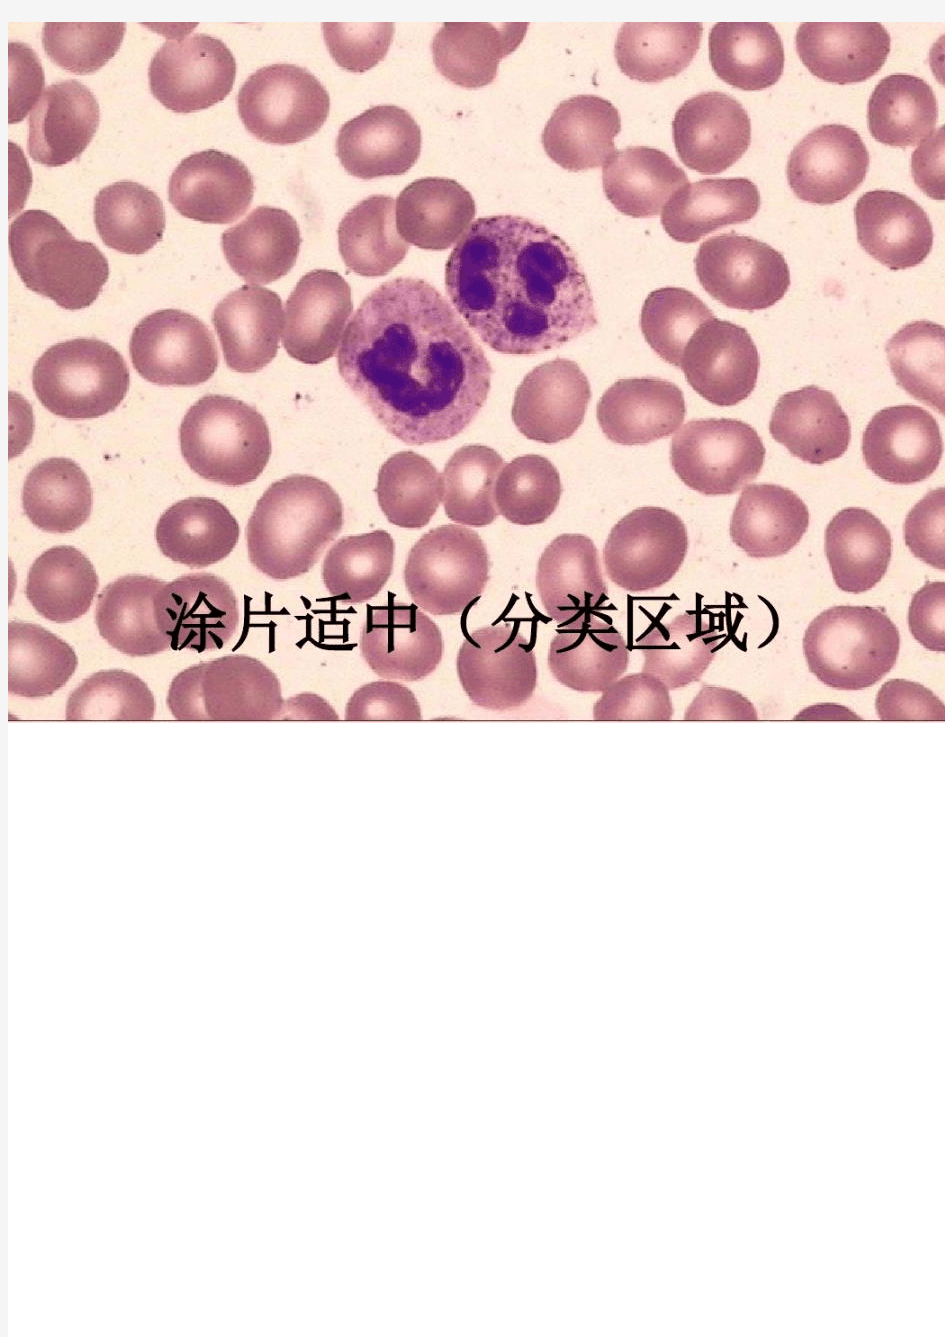 血细胞图谱大全